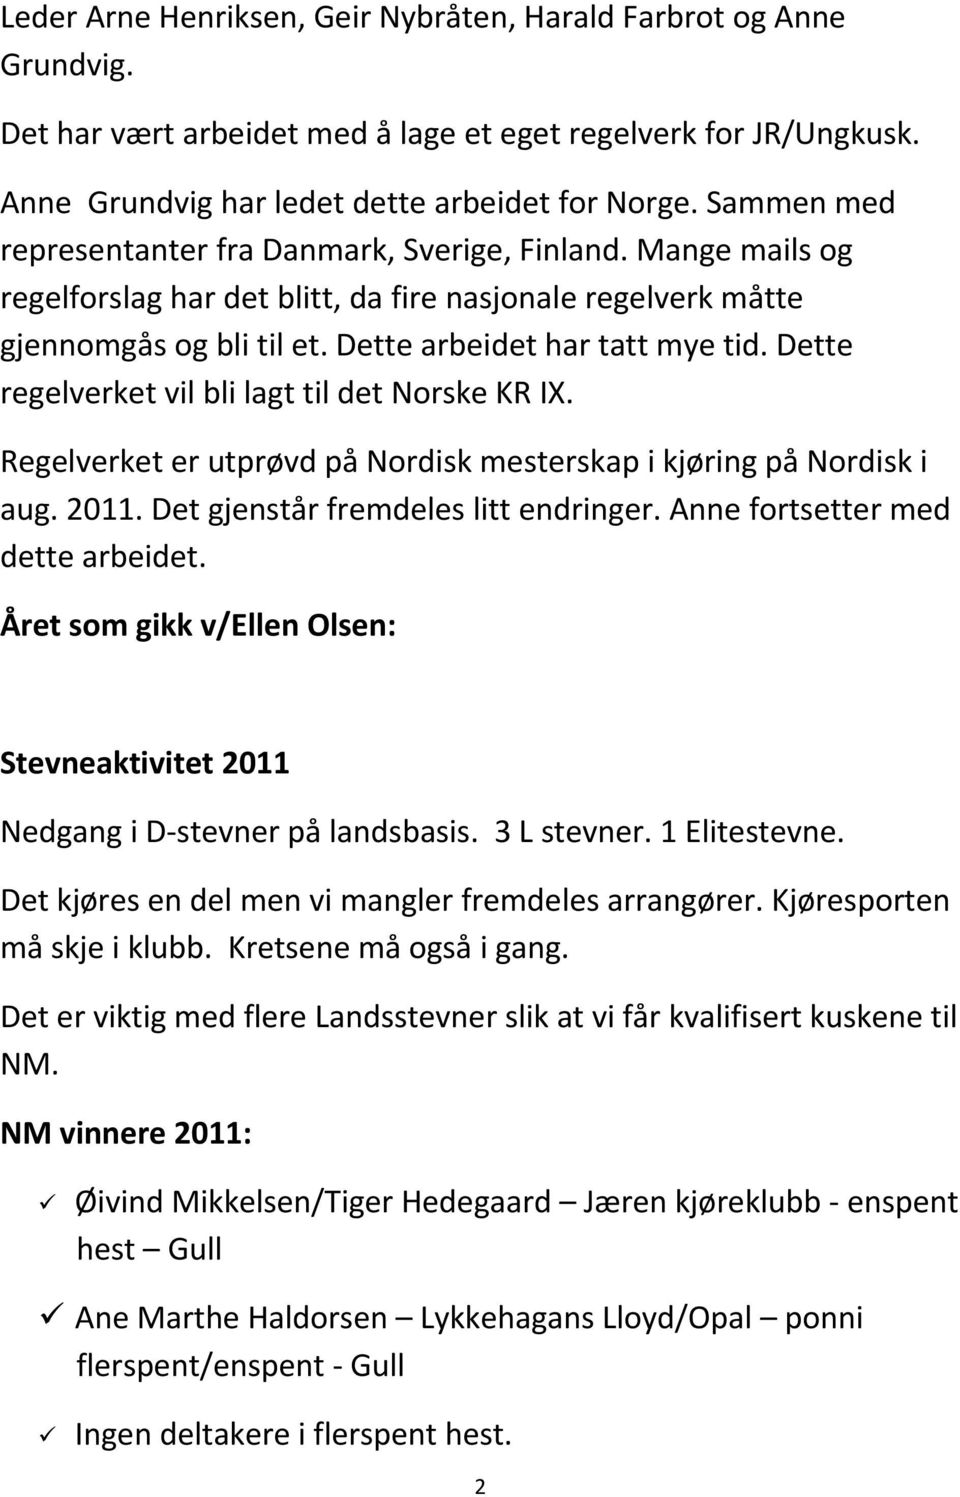 Dette regelverket vil bli lagt til det Norske KR IX. Regelverket er utprøvd på Nordisk mesterskap i kjøring på Nordisk i aug. 2011. Det gjenstår fremdeles litt endringer.